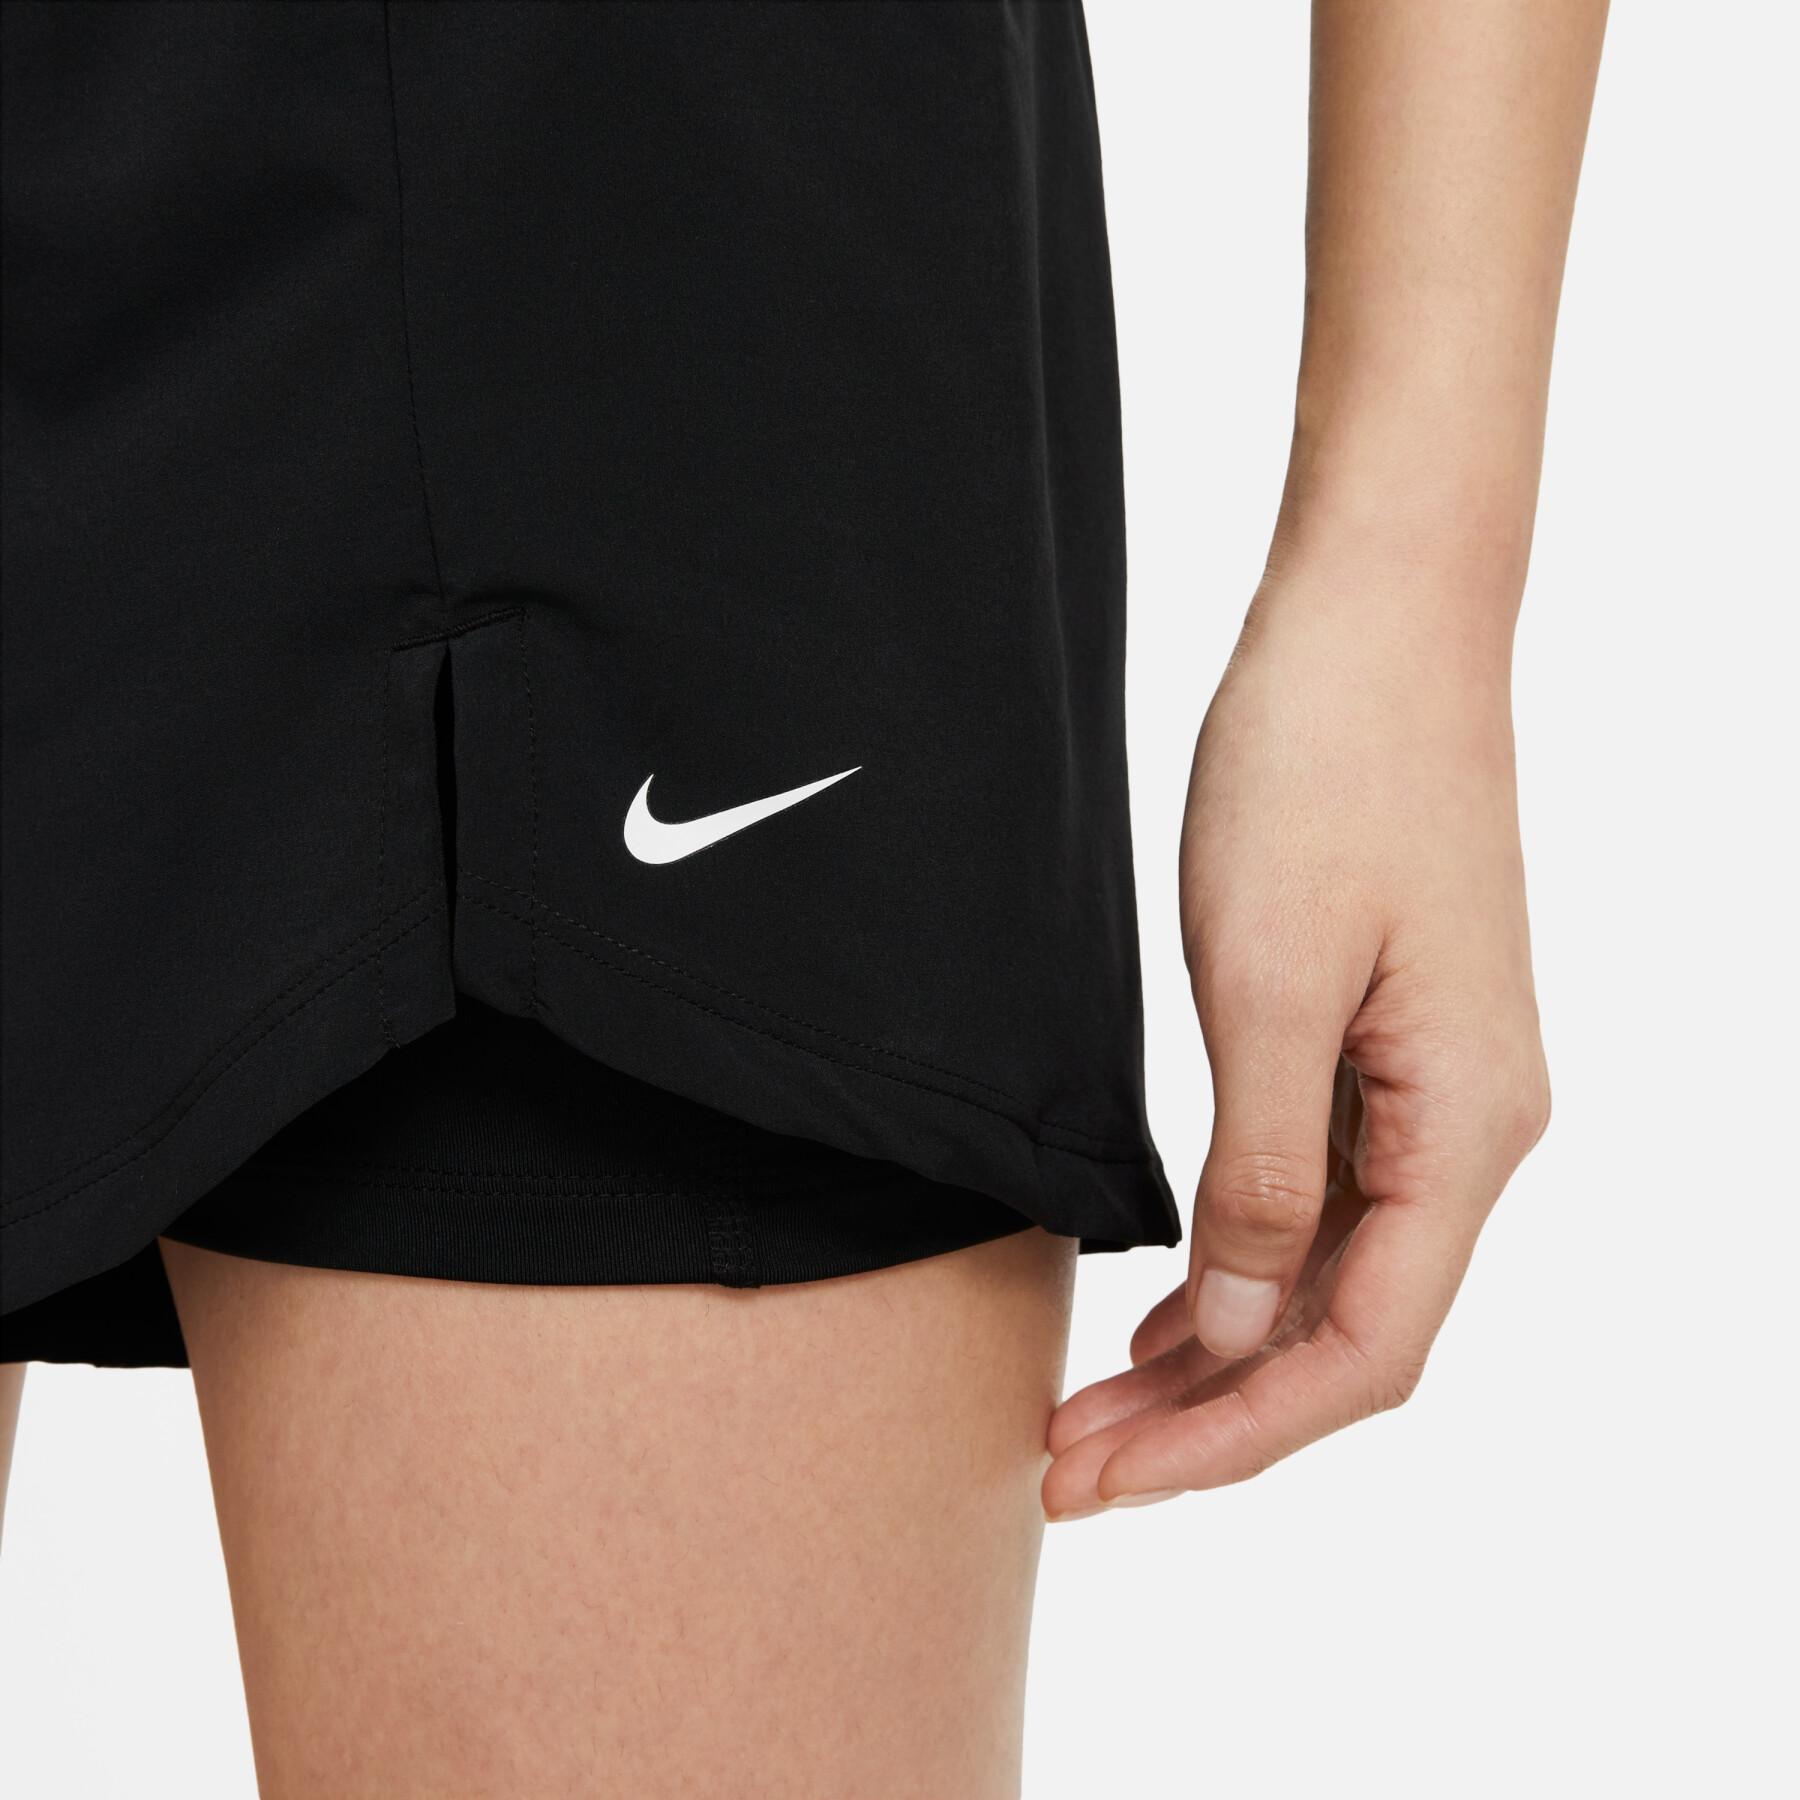 Szorty damskie Nike flex essential 2-in-1